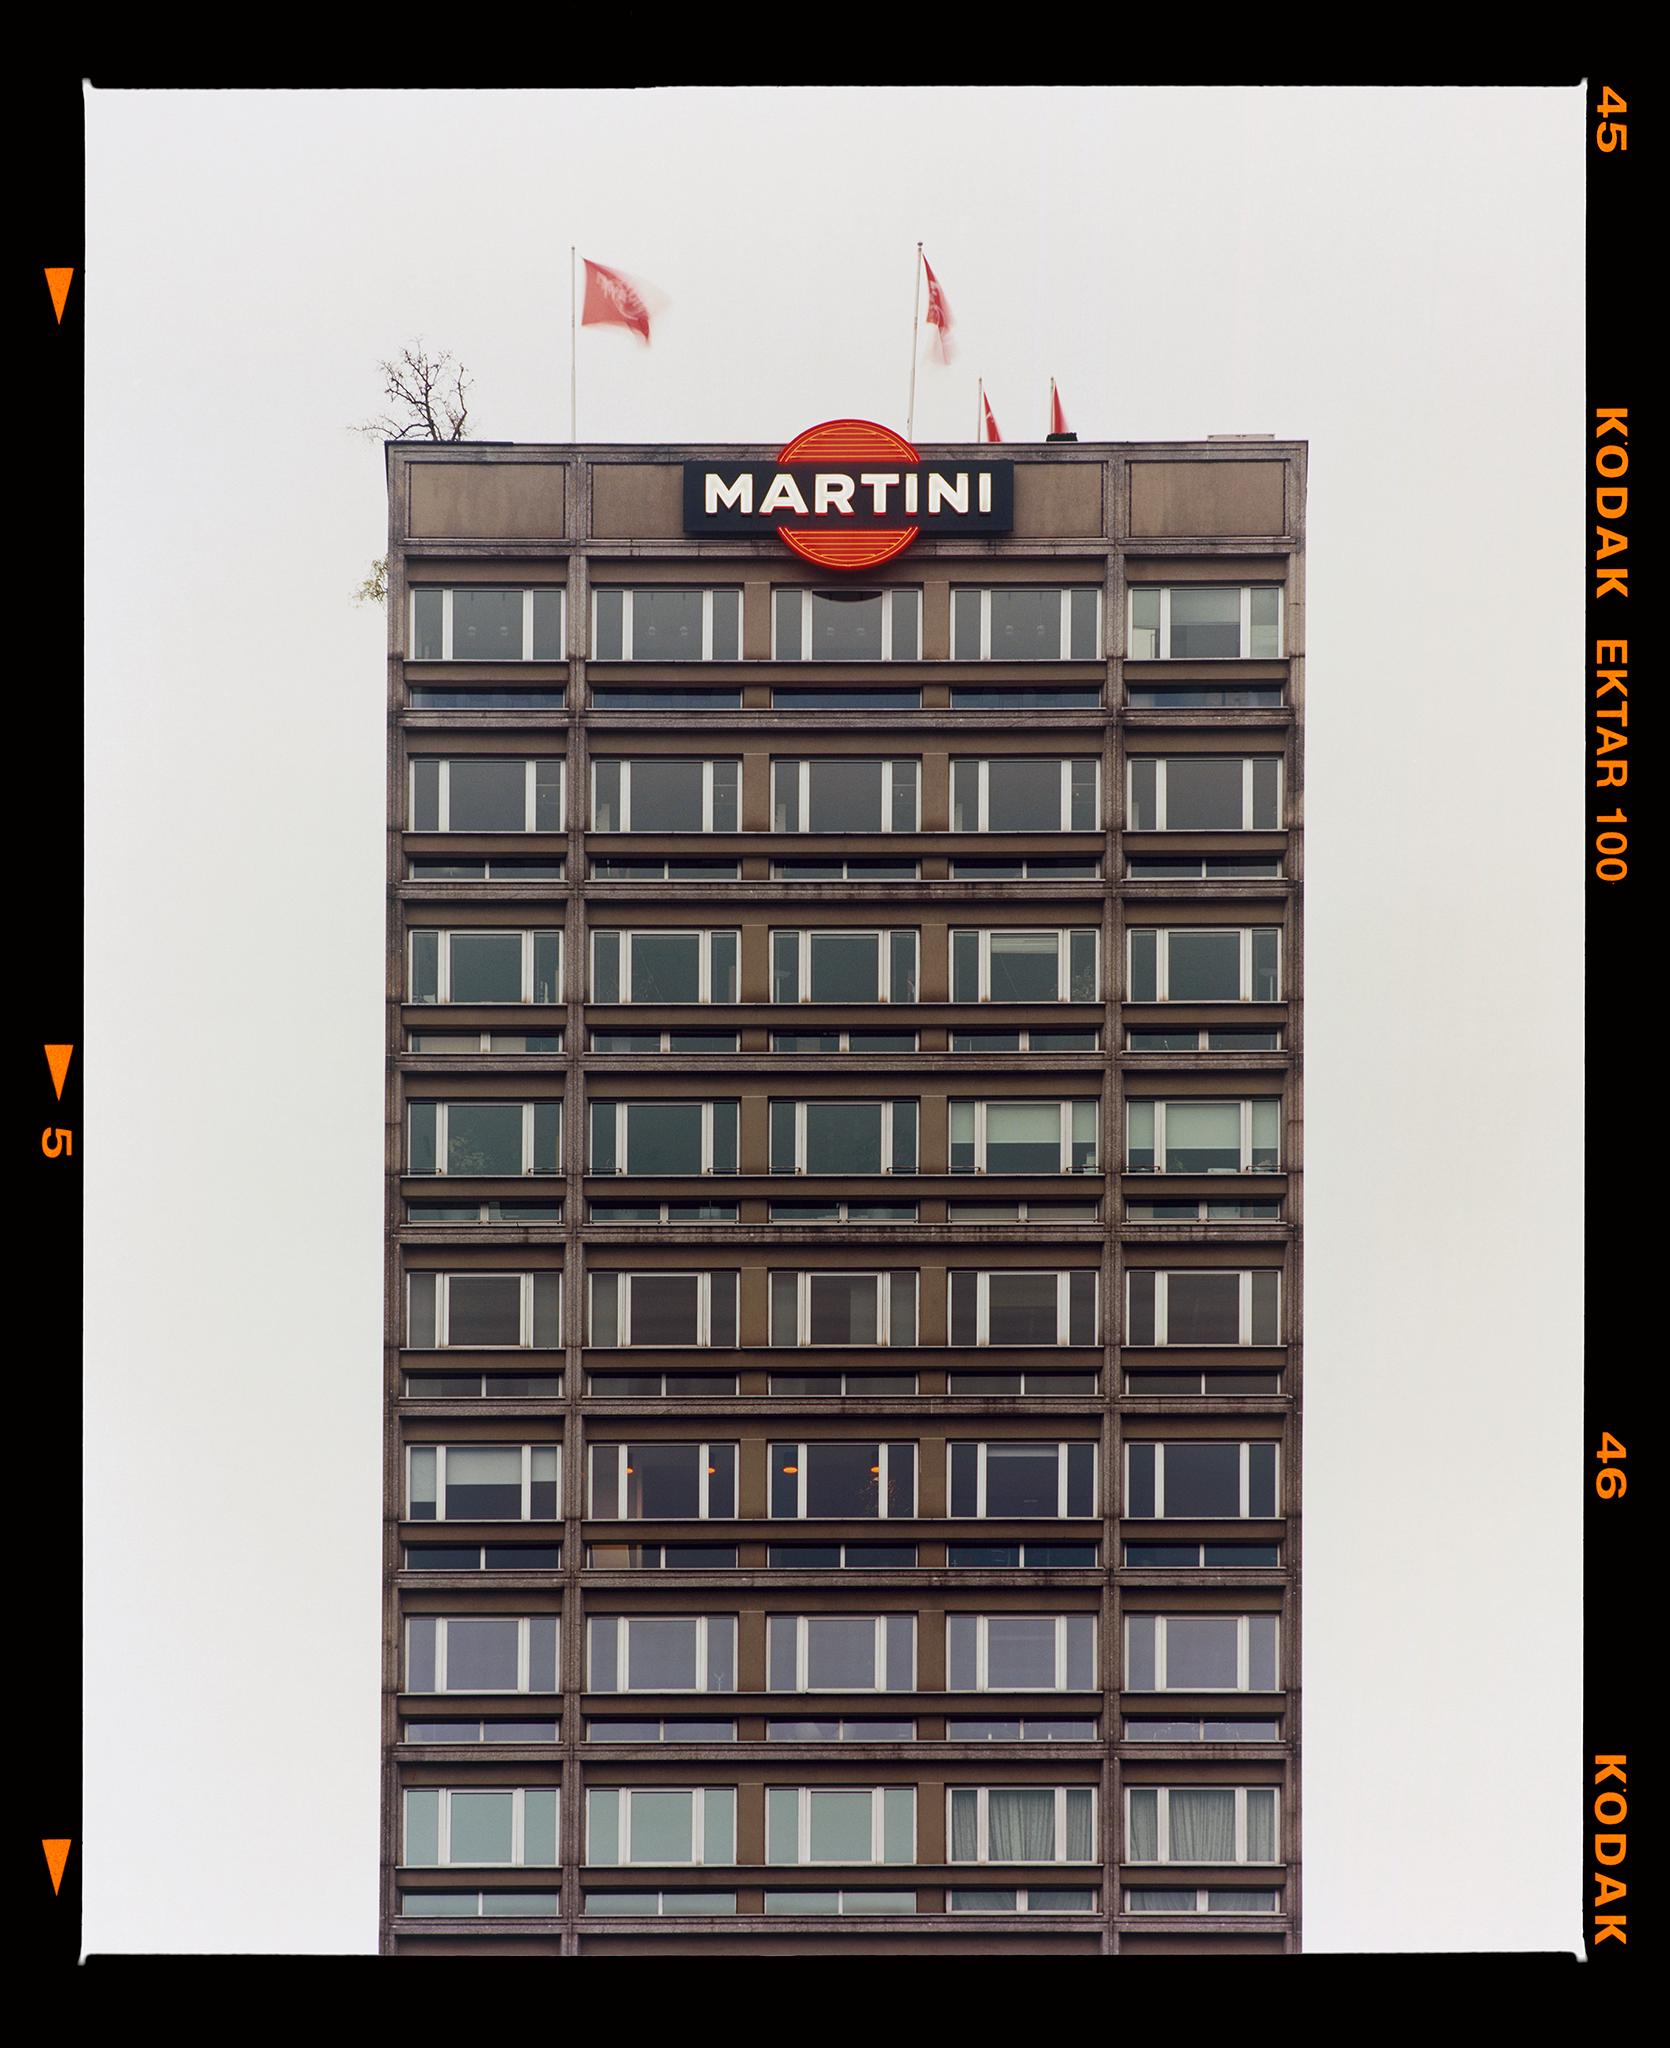 Martini bleu et gris, Milan - Photo d'architecture italienne encadrée - Print de Richard Heeps